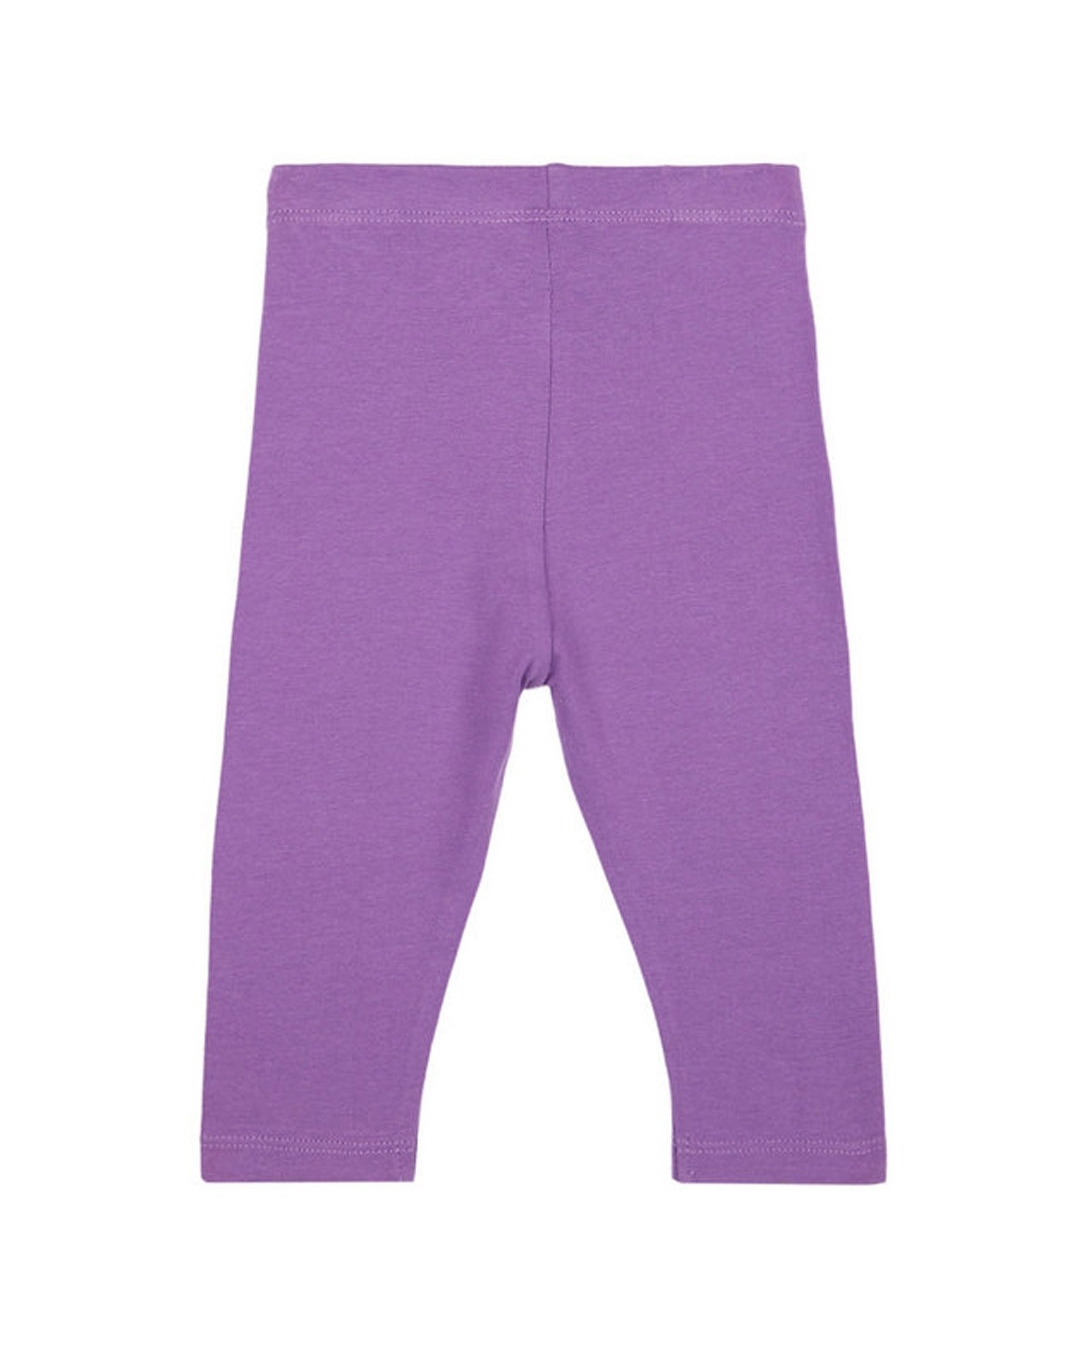 Buy Girls Leggings- Purple Online at Best Price